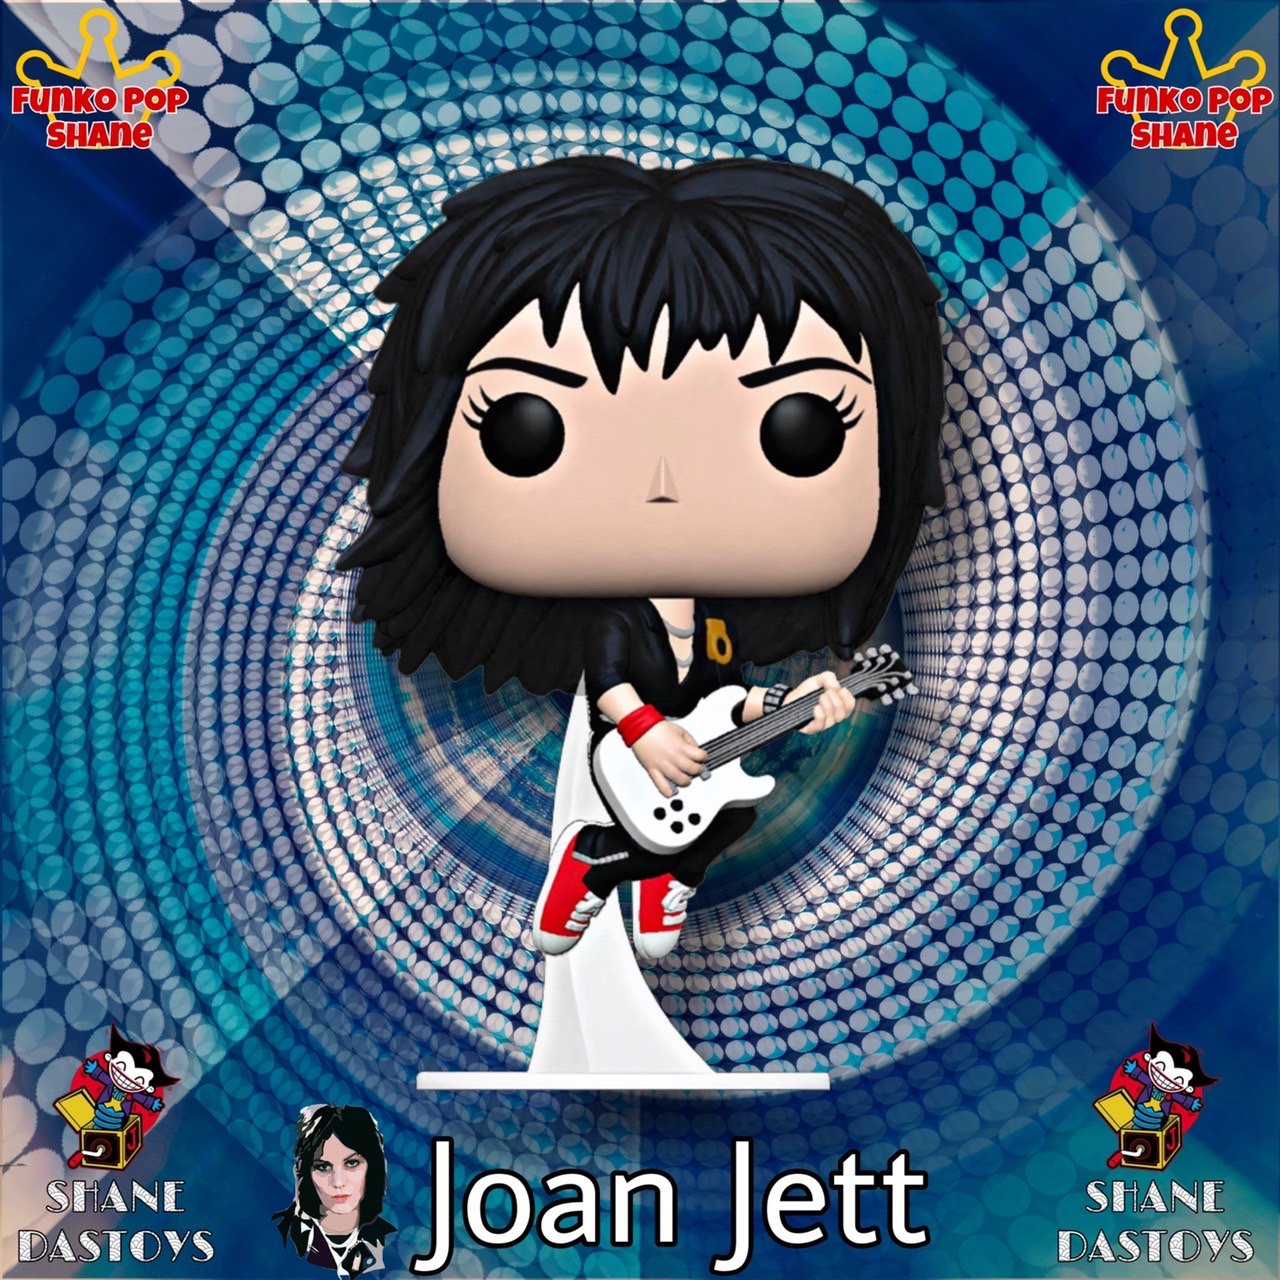 Funko Pop! ROCKS : Joan Jett